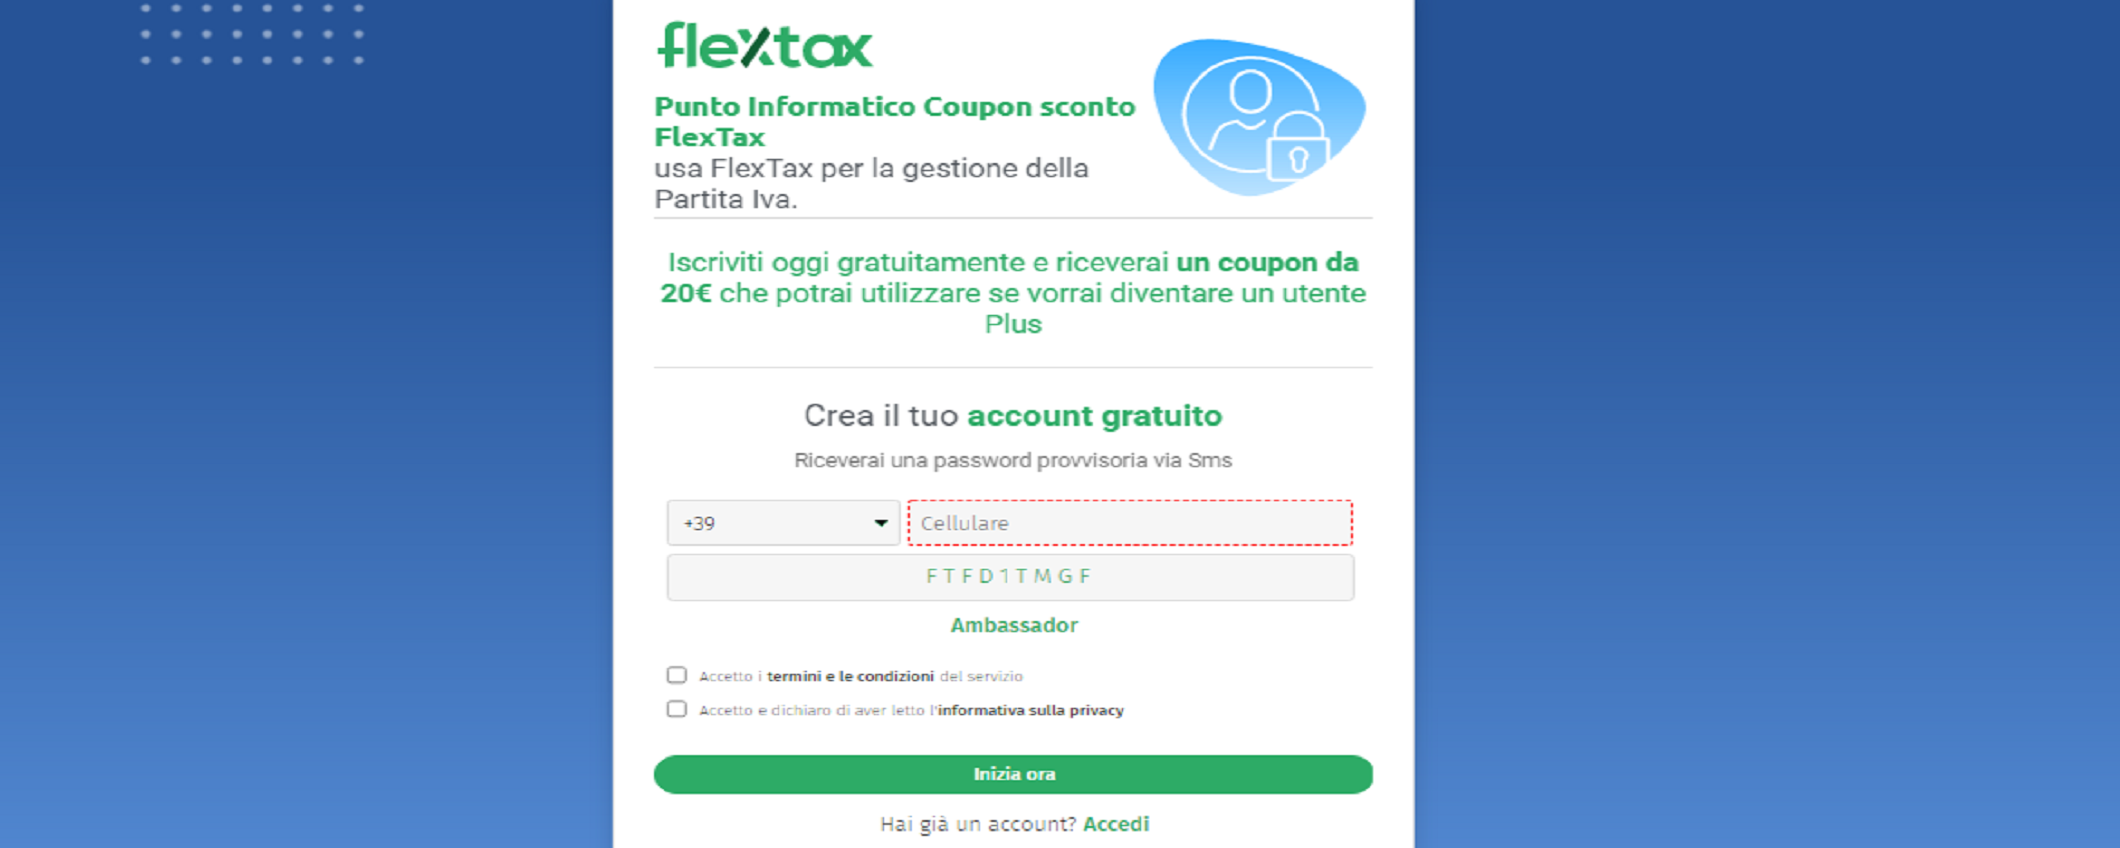 FlexTax: coupon per fatturazione elettronica e consulenza